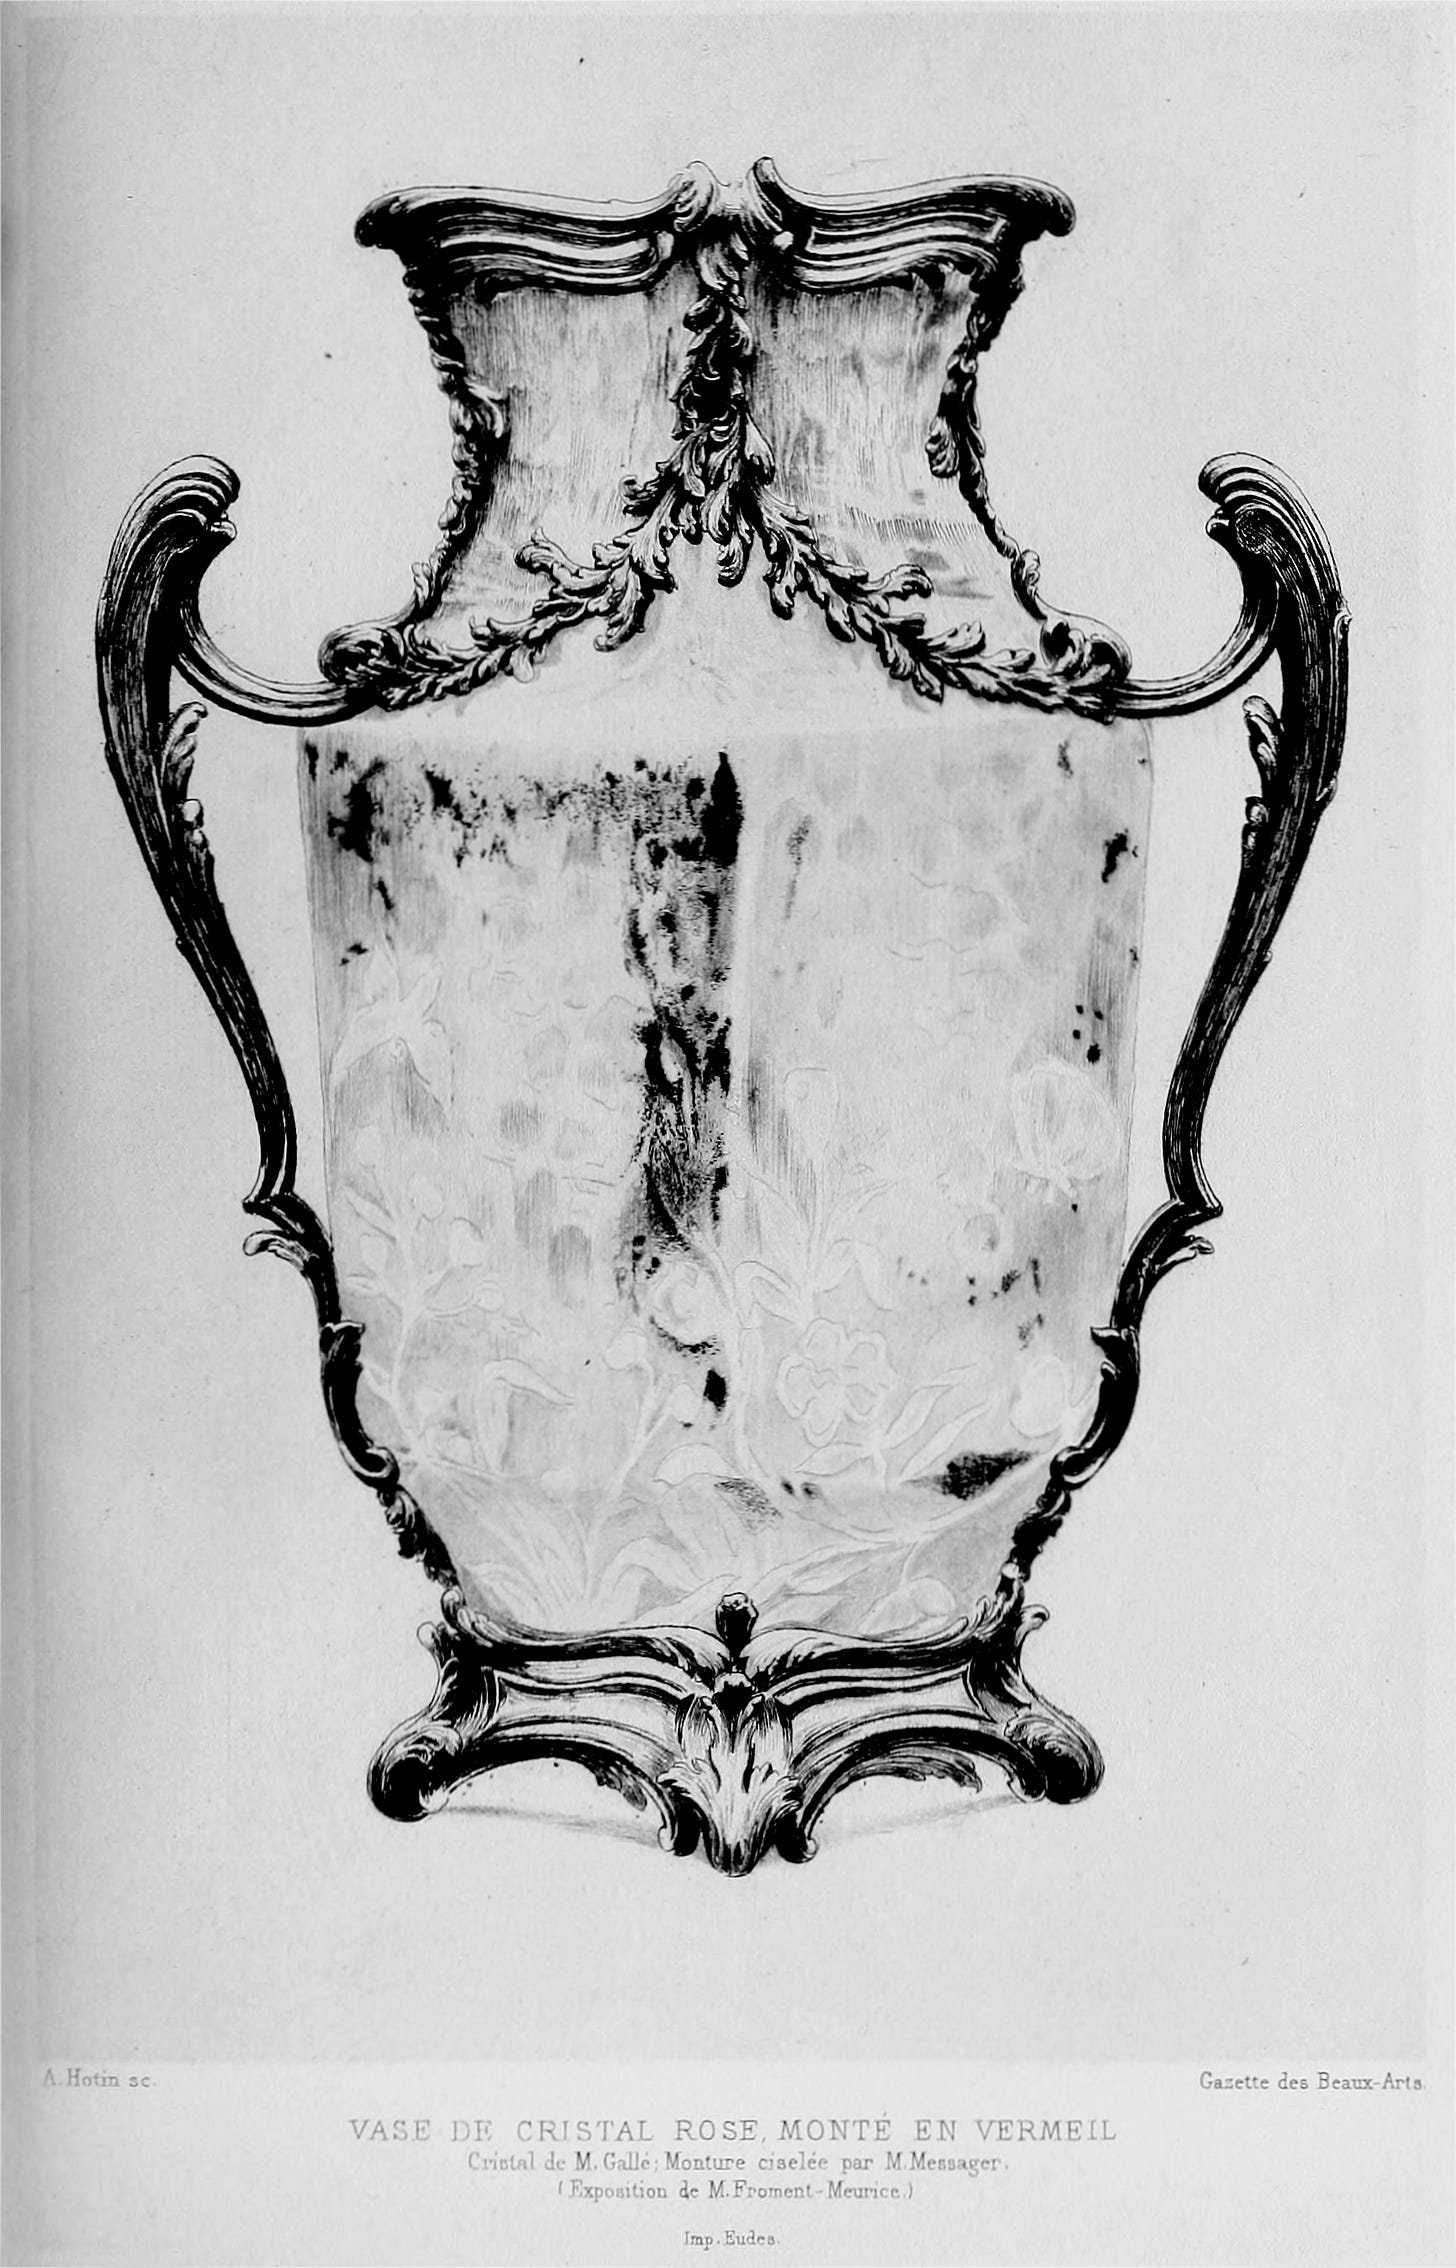 Emile Froment-Meurice, Emile Gallé, Vase de cristal rose monté en vermeil, Gazette des Beaux-Arts 1889.